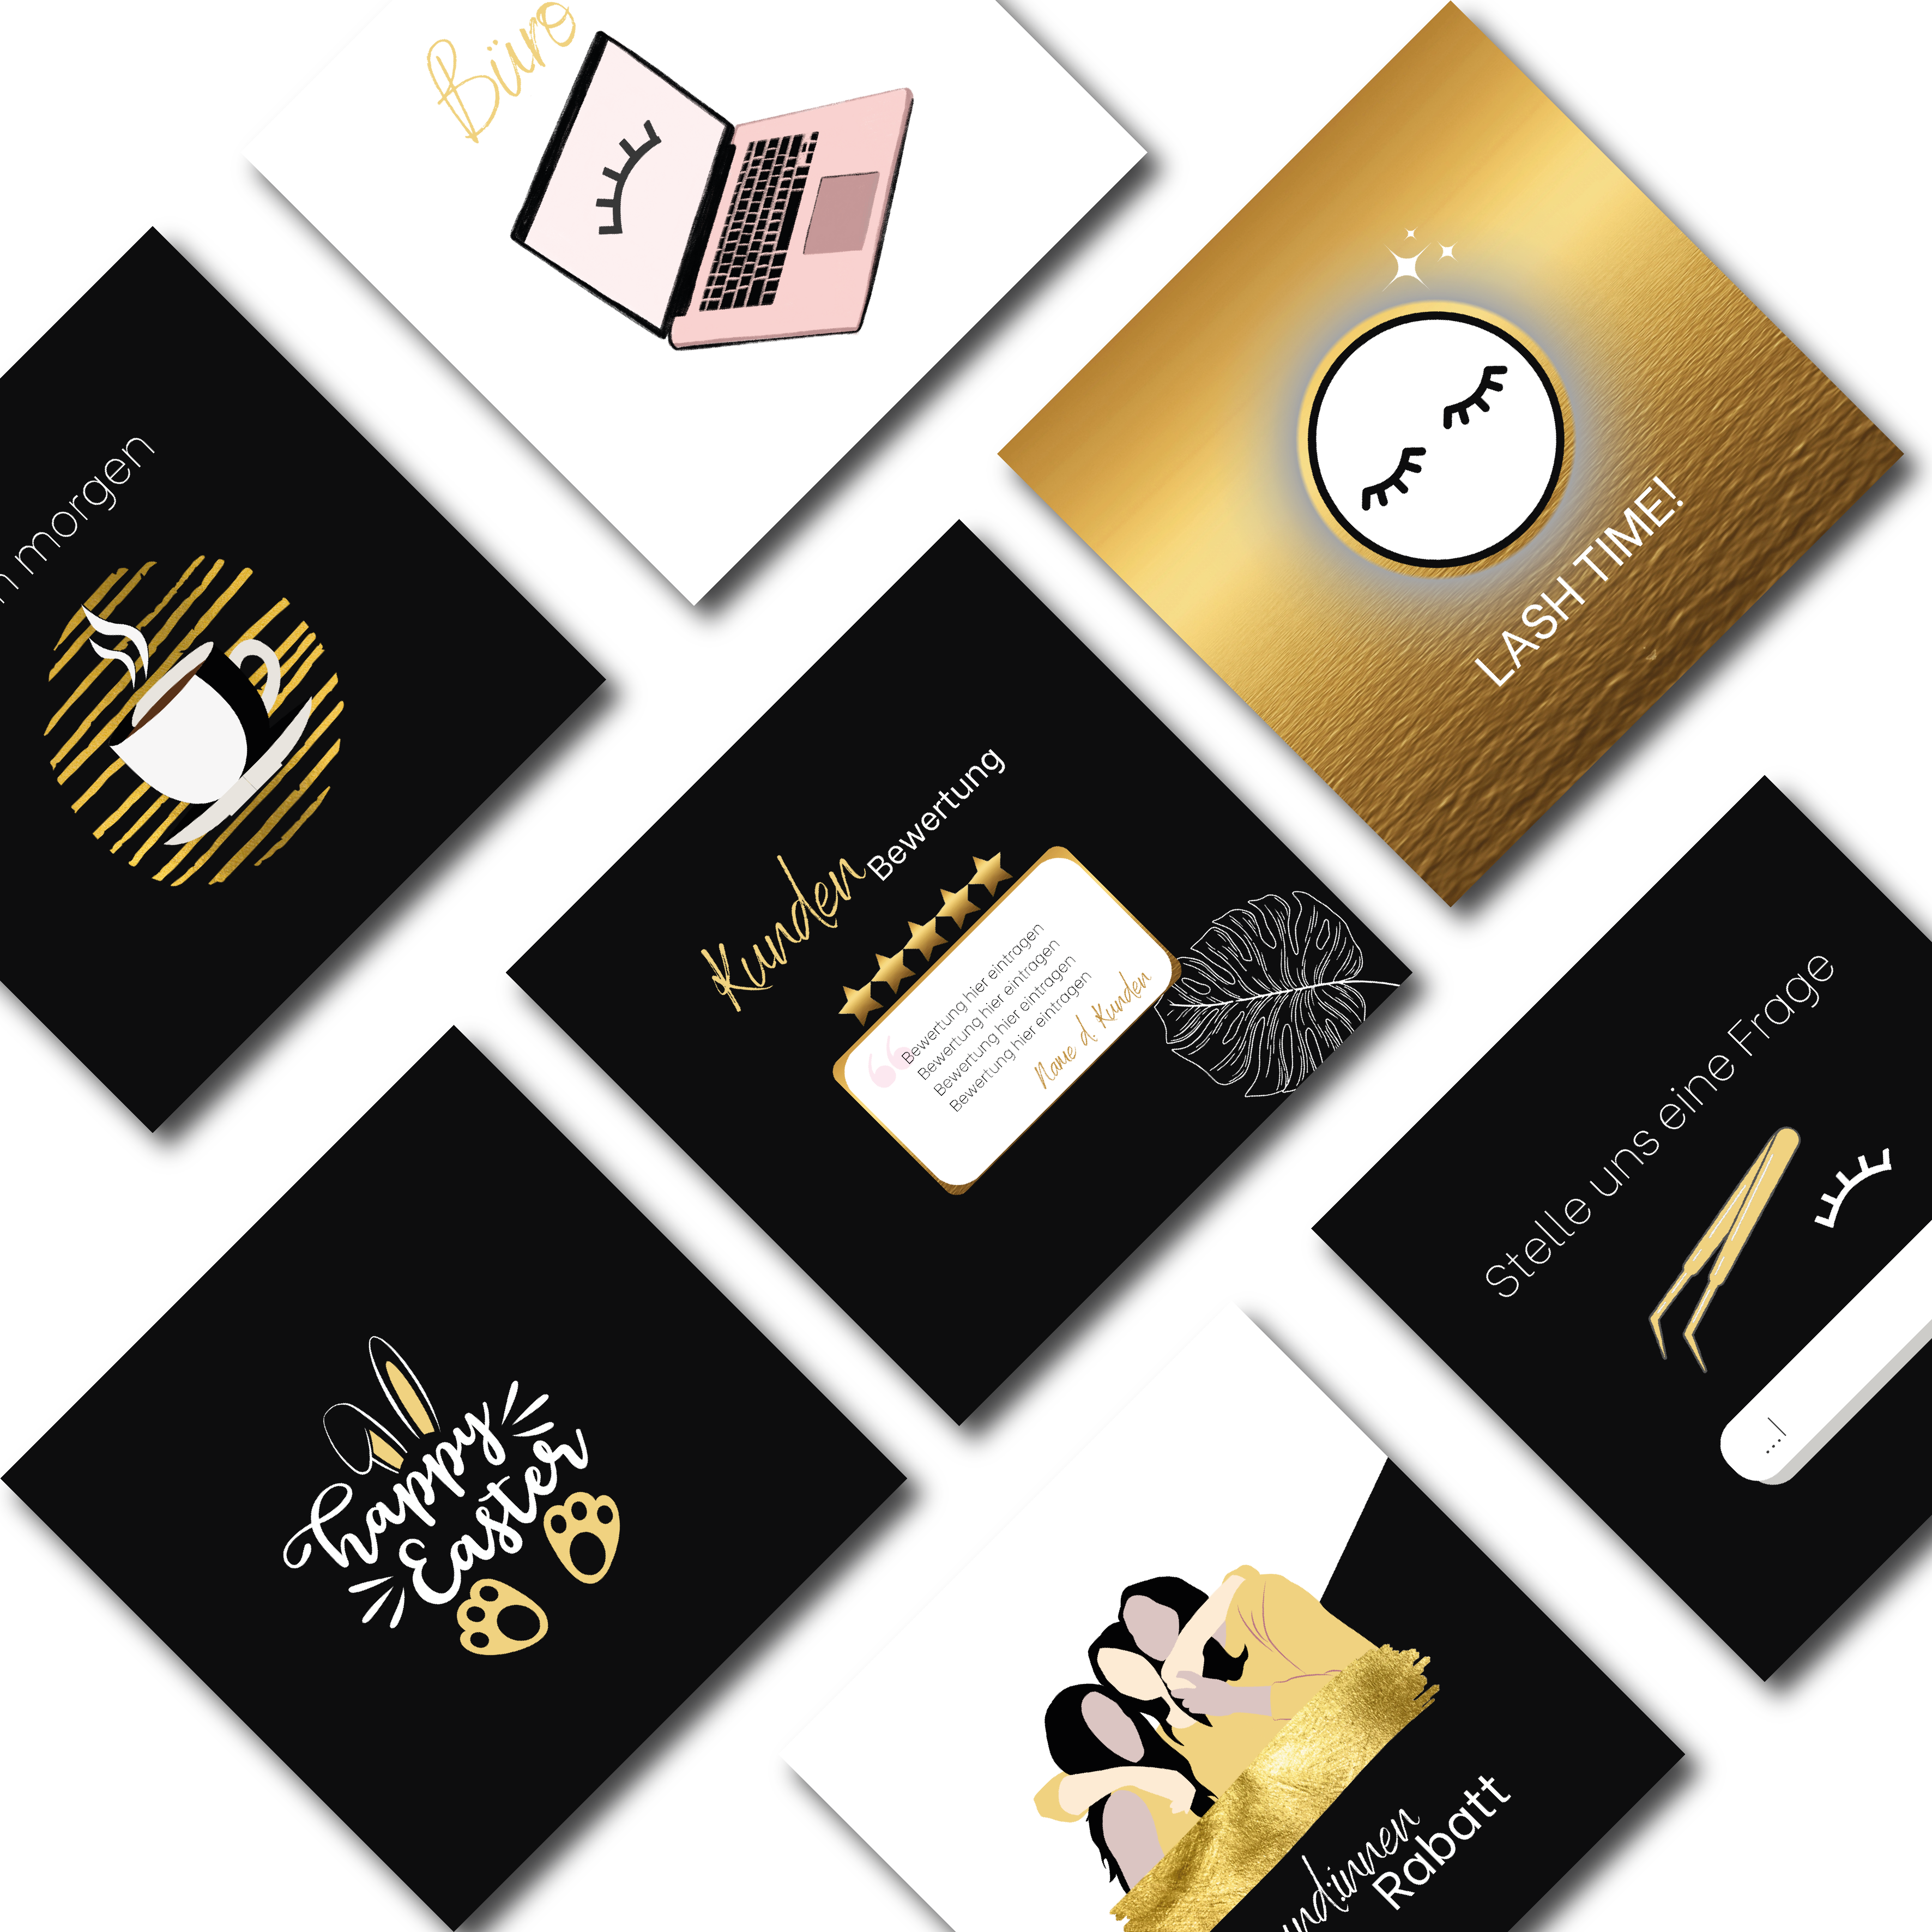 60 Instagram post templates for eyelash stylists - eyelash studio - black/gold